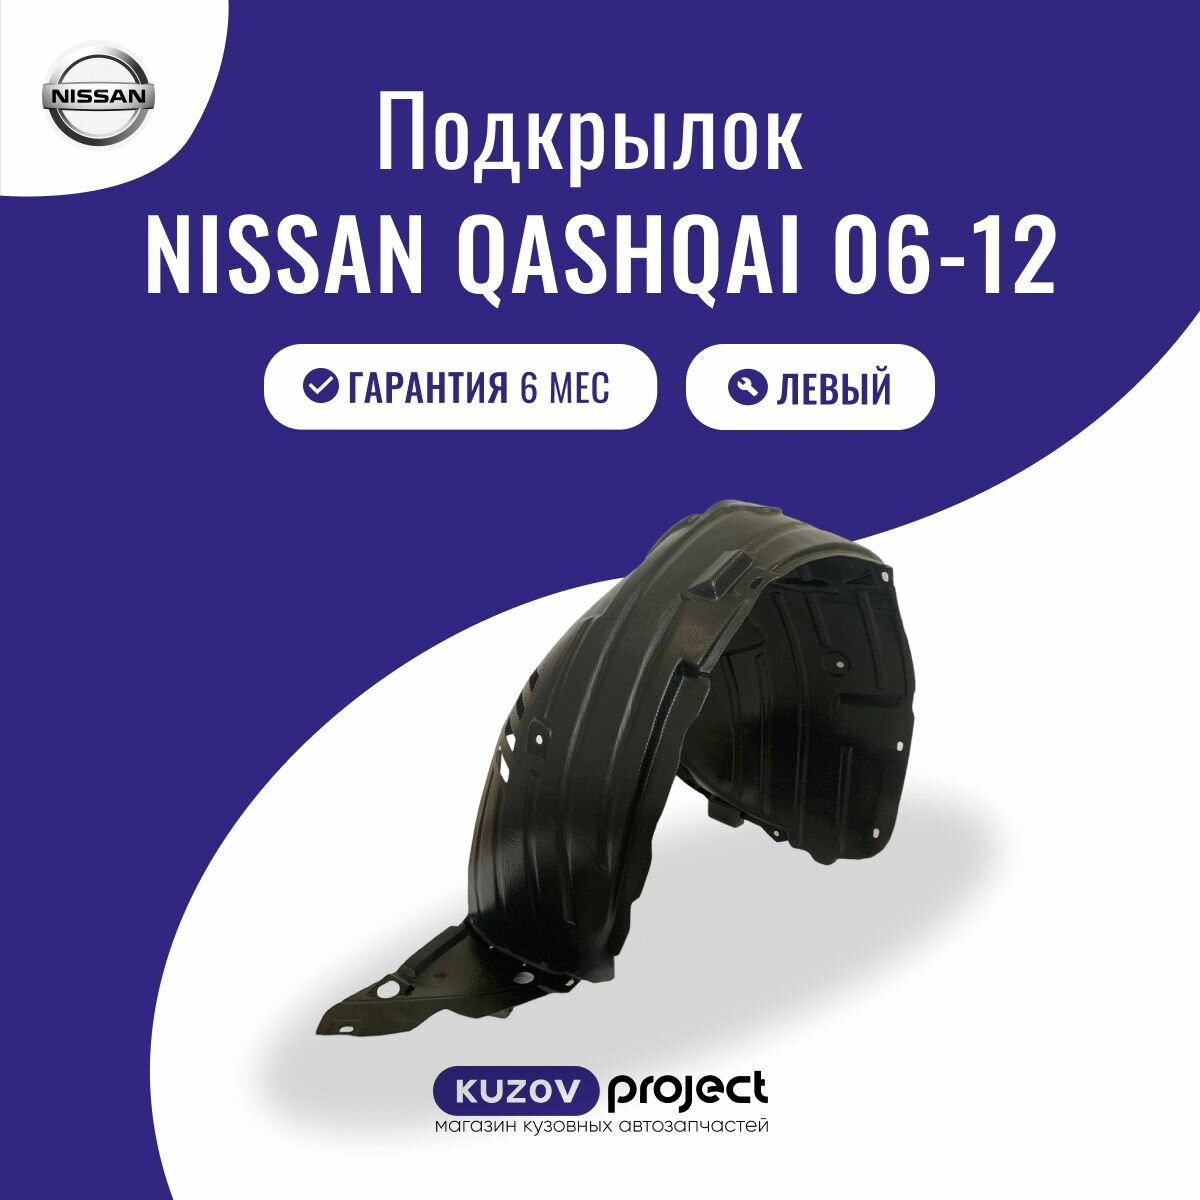 Подкрылок передний Nissan Qashqai 06-12 Левый